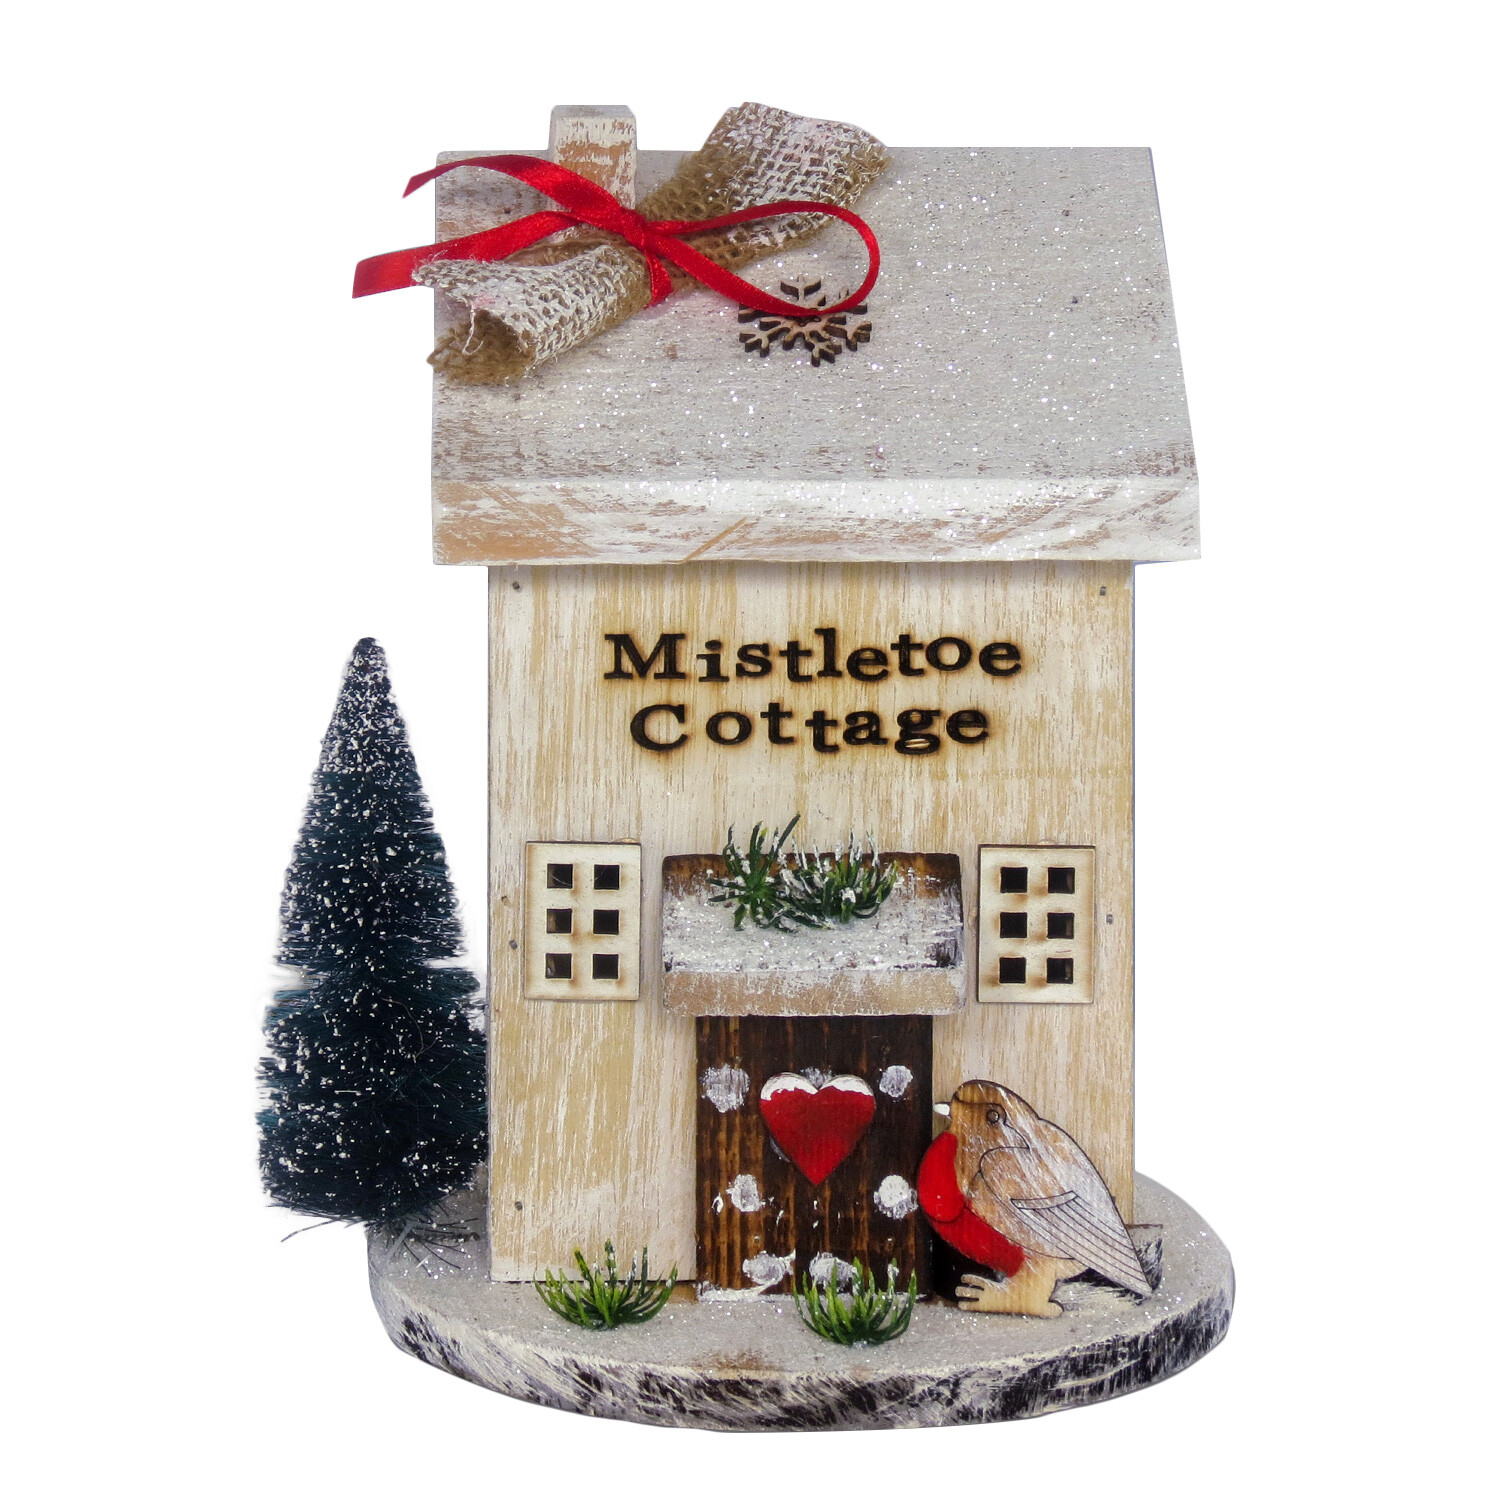 Mistletoe Cottage Image